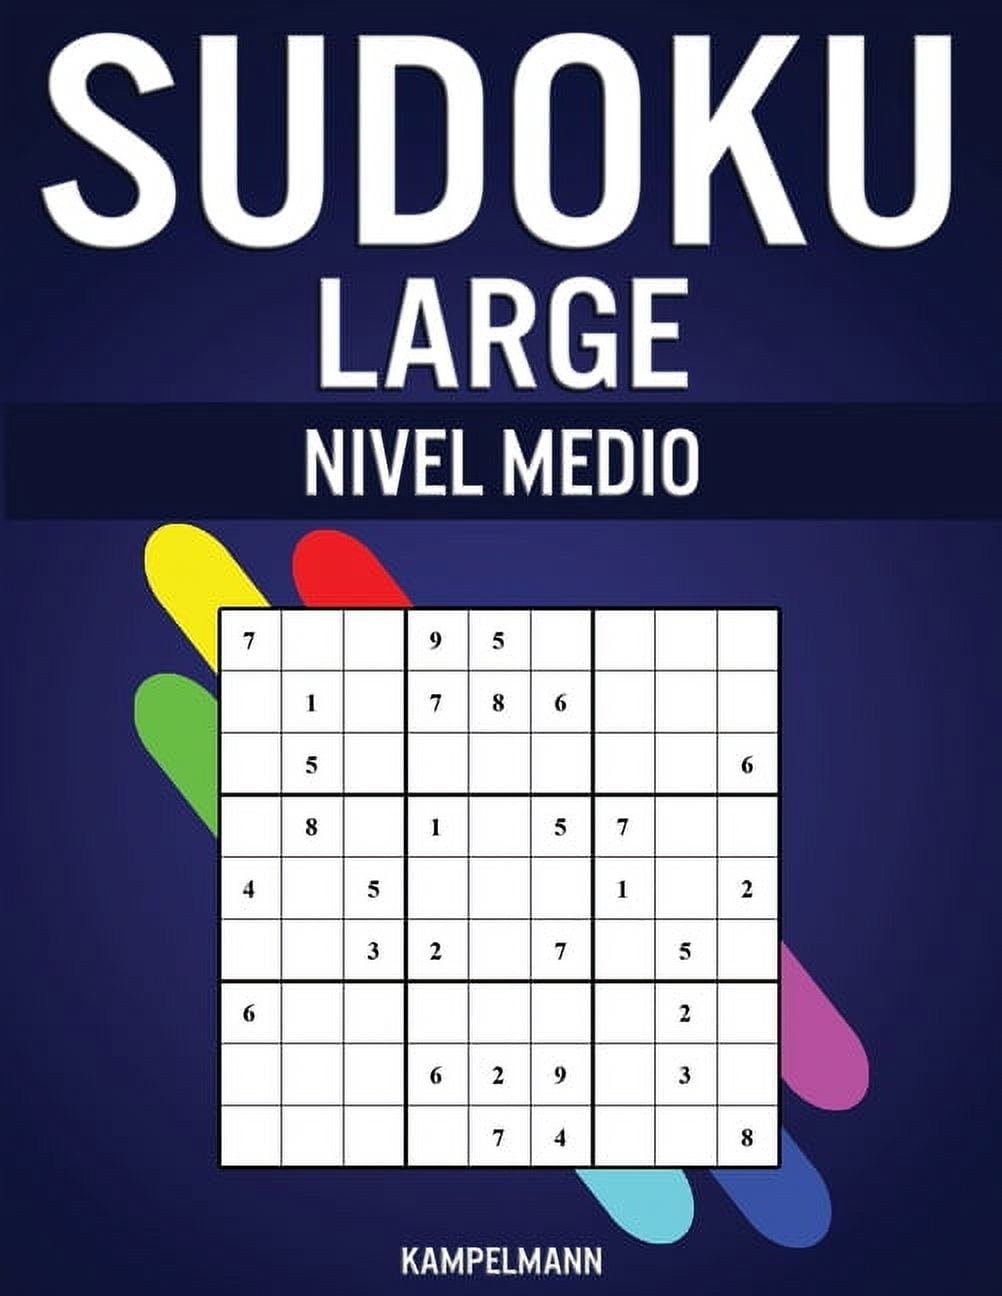 Sudoku Large Nivel Medio: 250 Sudoku de Nivel Medio con Soluciones